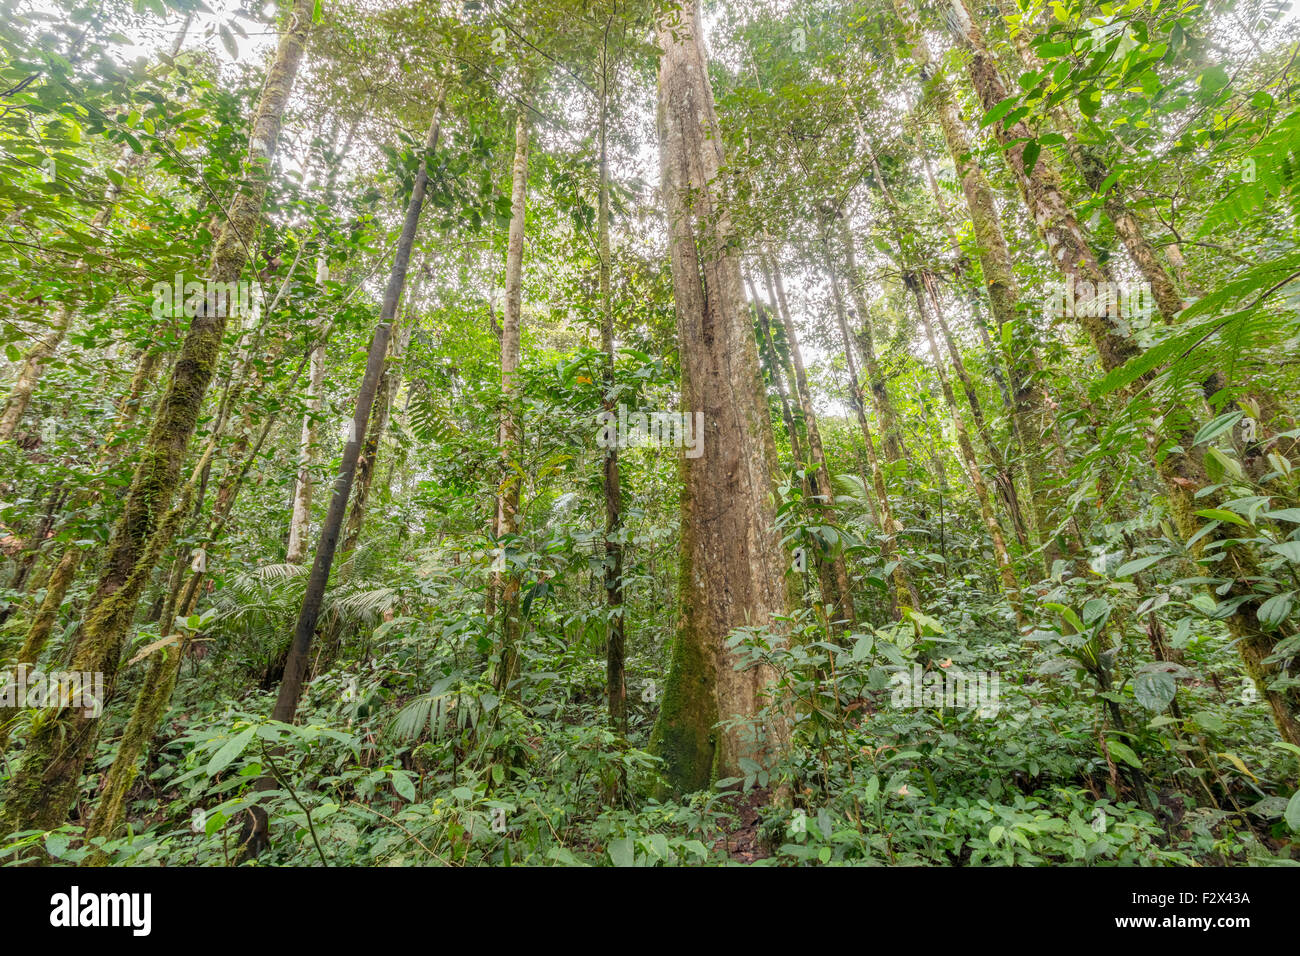 Innen- oder tropischen Regenwald im ecuadorianischen Amazonasgebiet mit einem großen Strebepfeiler Stamm Baum. HDR-Bild. Stockfoto